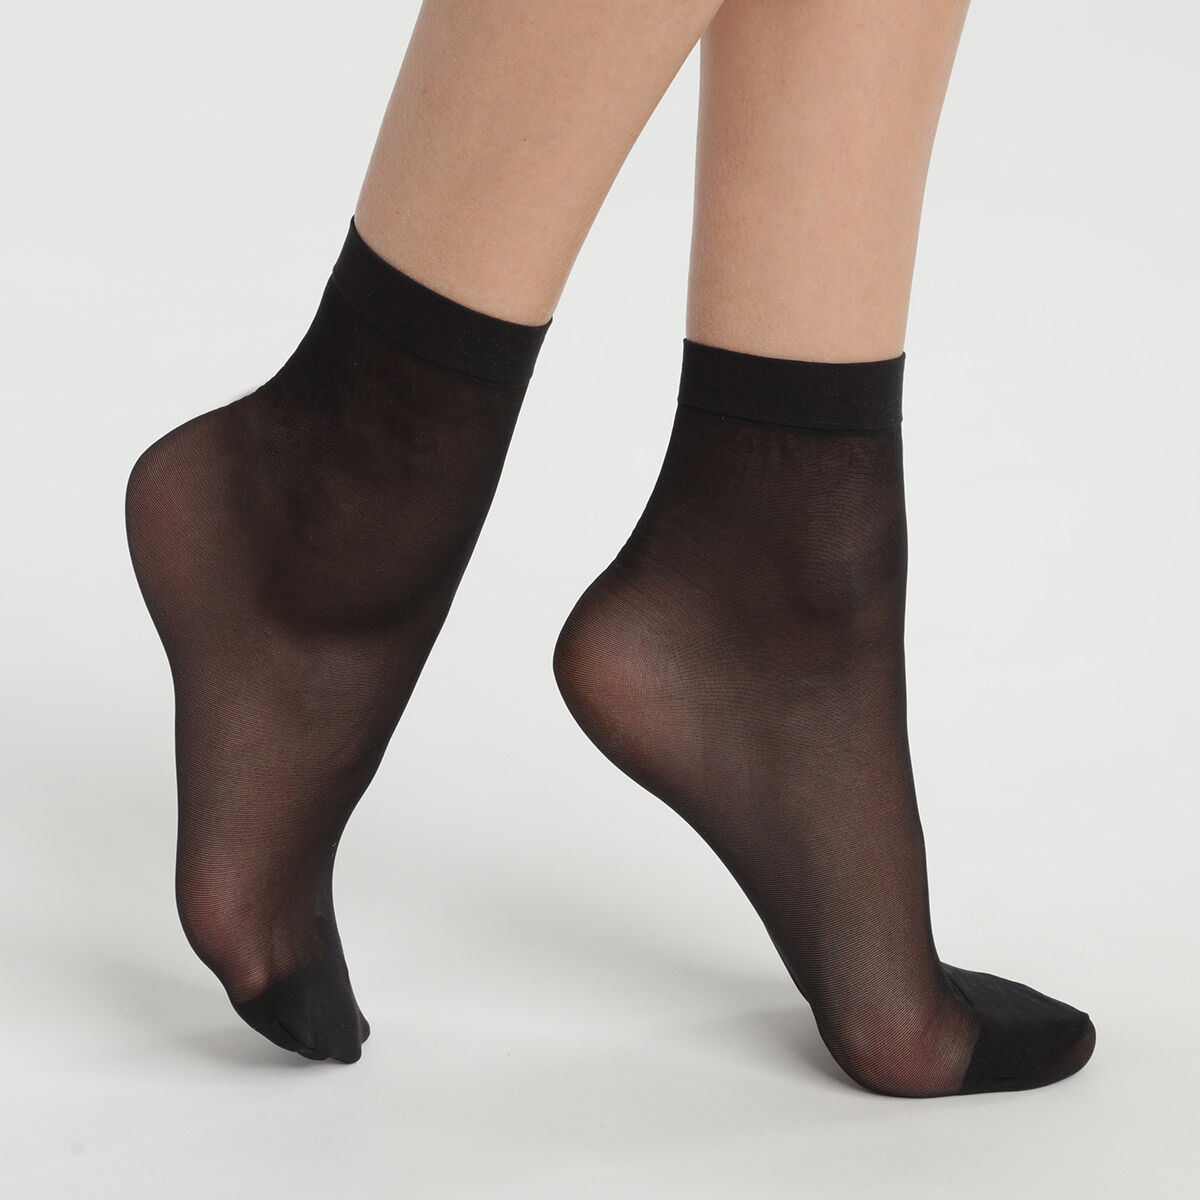 Womens Ladies Sheer Footsie Hosiery Socks Comfortable Cotton One Size Pop Sock 